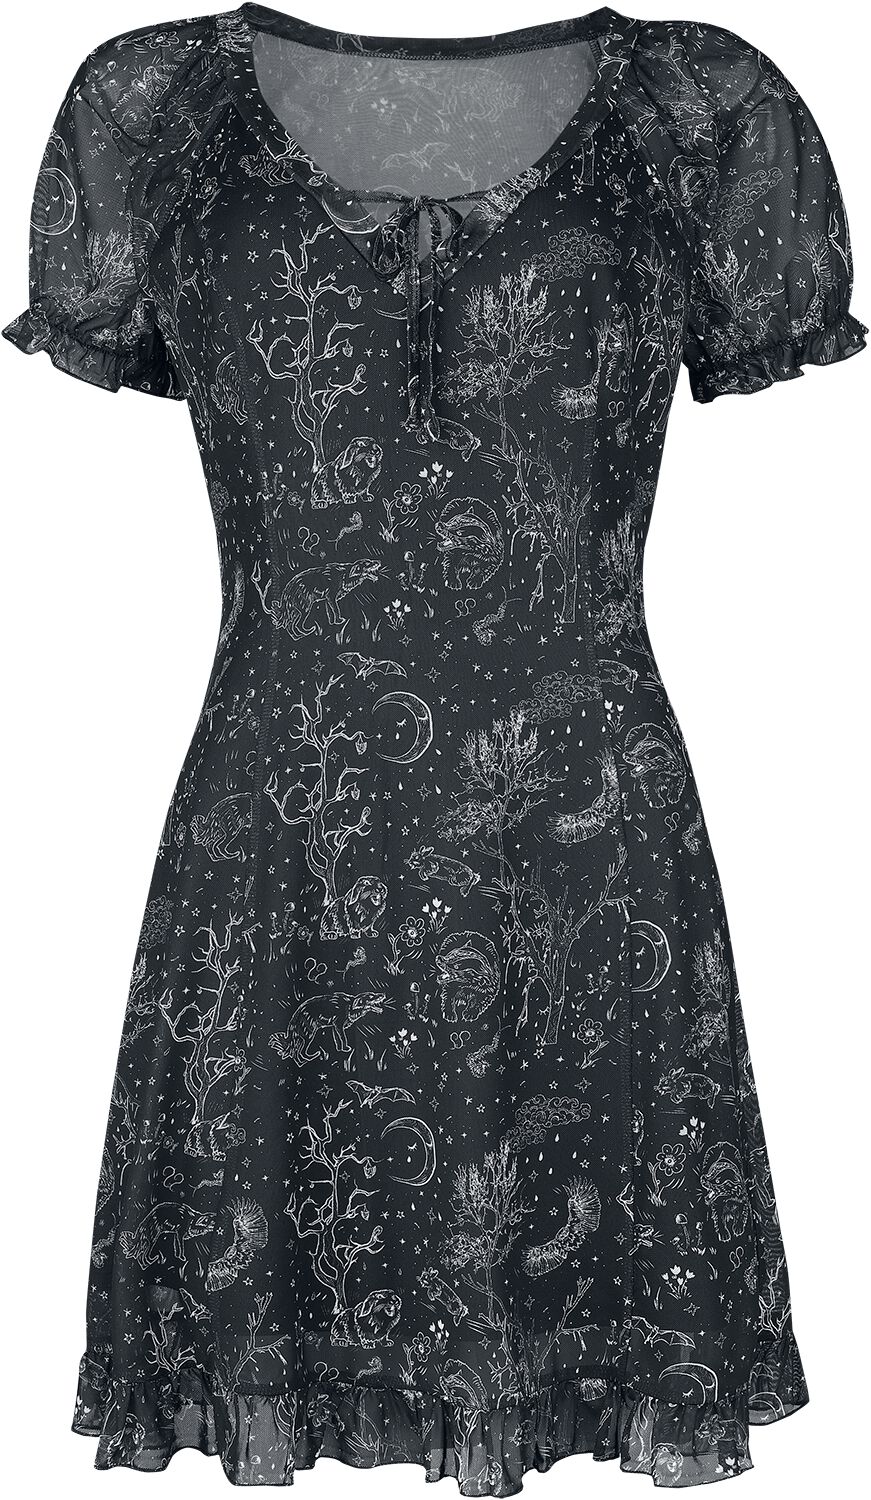 Jawbreaker Night Forest Mesh Dress Kurzes Kleid schwarz weiß in XS